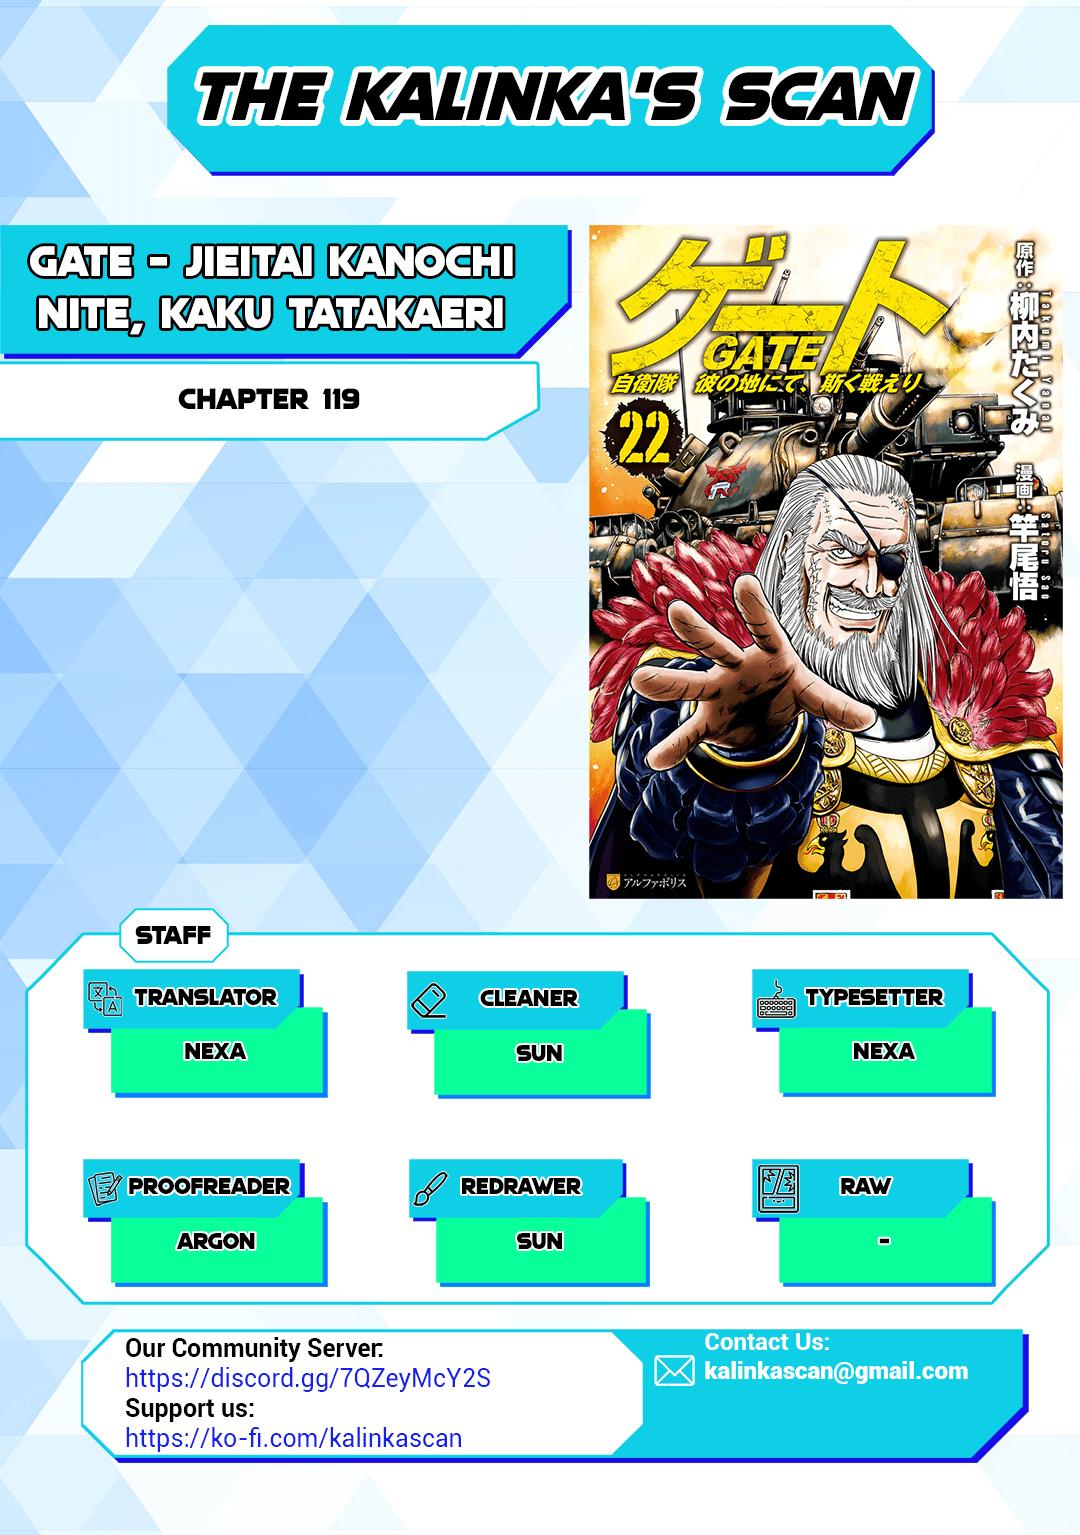 Gate - Jietai Kare No Chi Nite, Kaku Tatakeri - episode 135 - 0